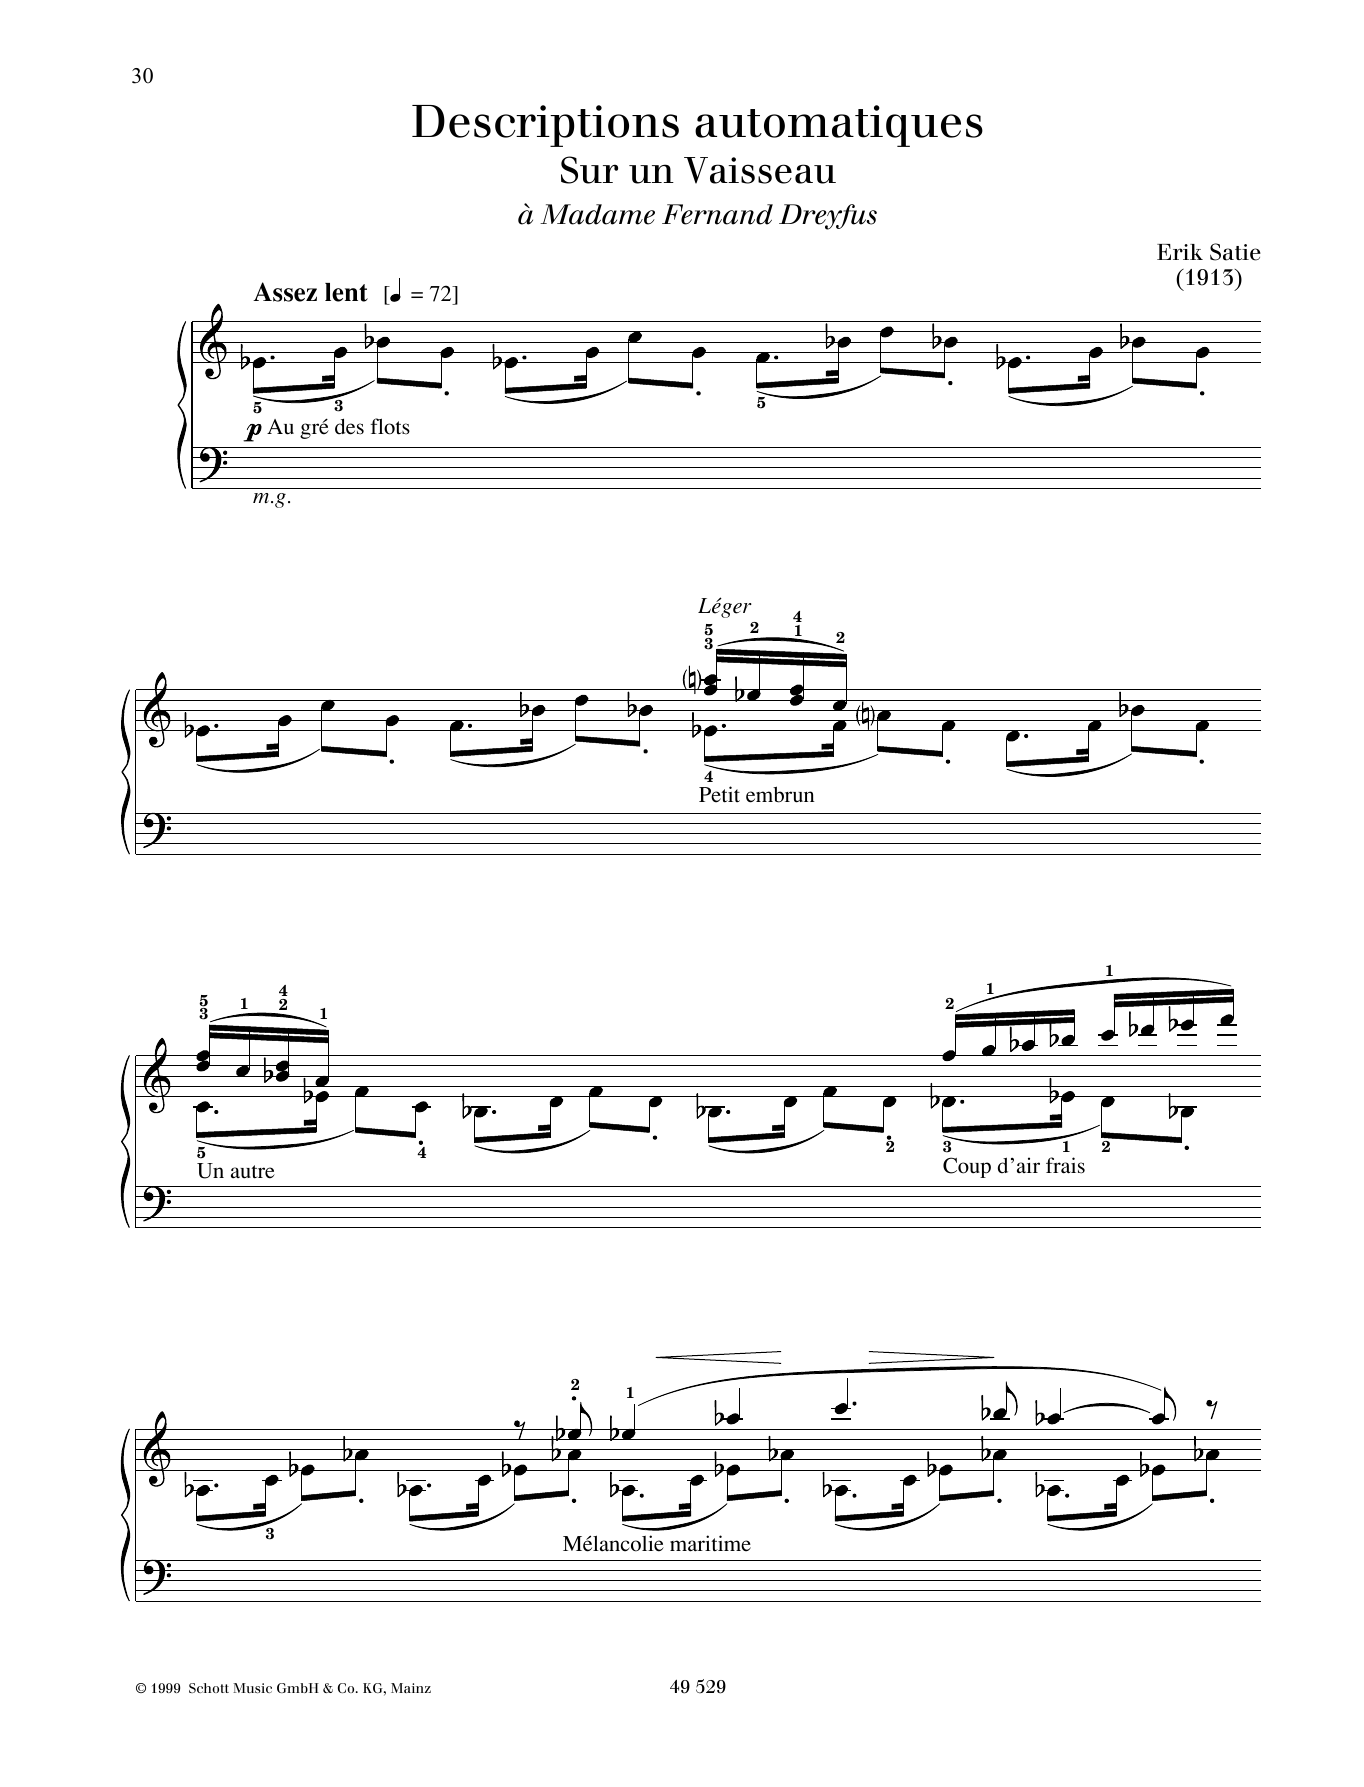 Download Erik Satie Sur un Vaisseau Sheet Music